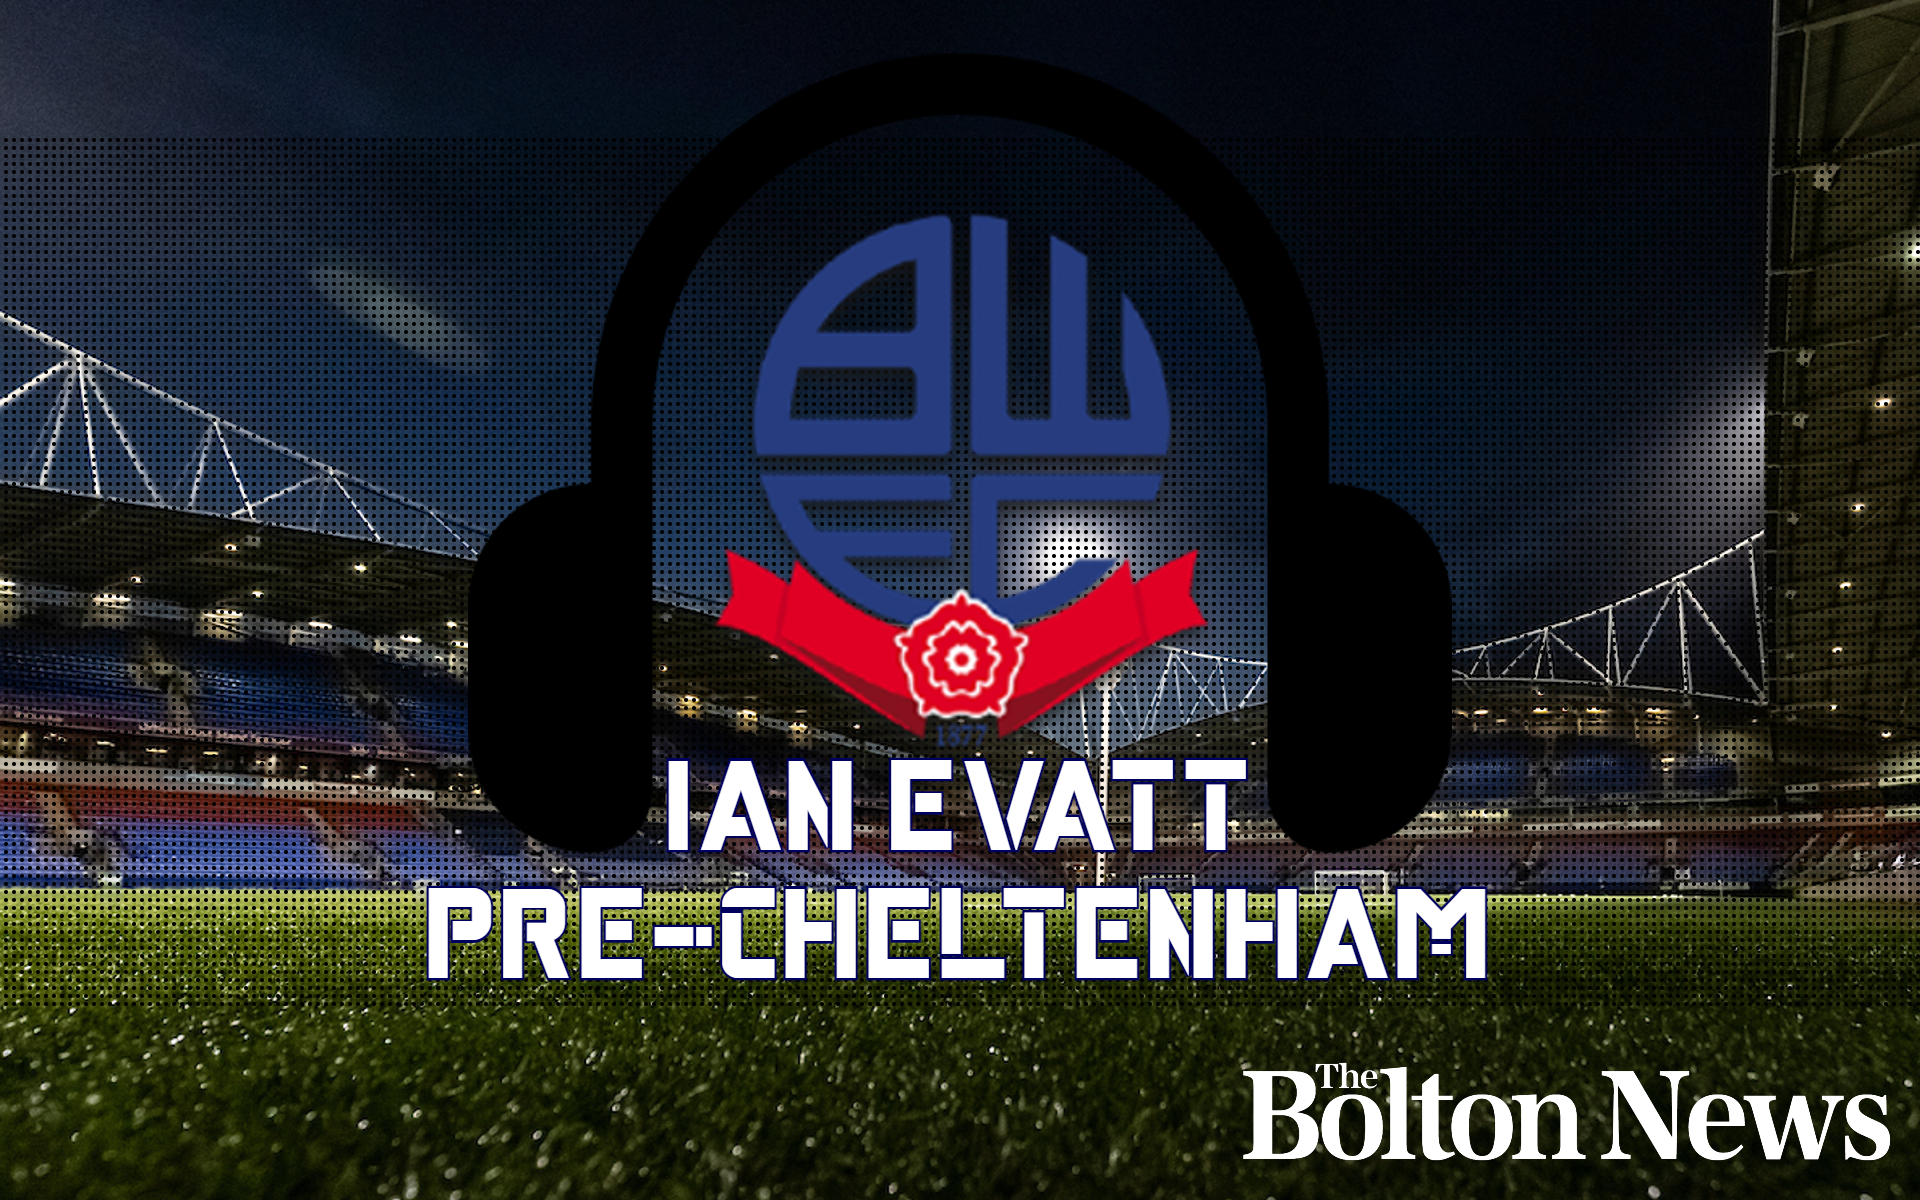 Bolton Wanderers v Cheltenham Town - Listen to Ian Evatt's full press conference